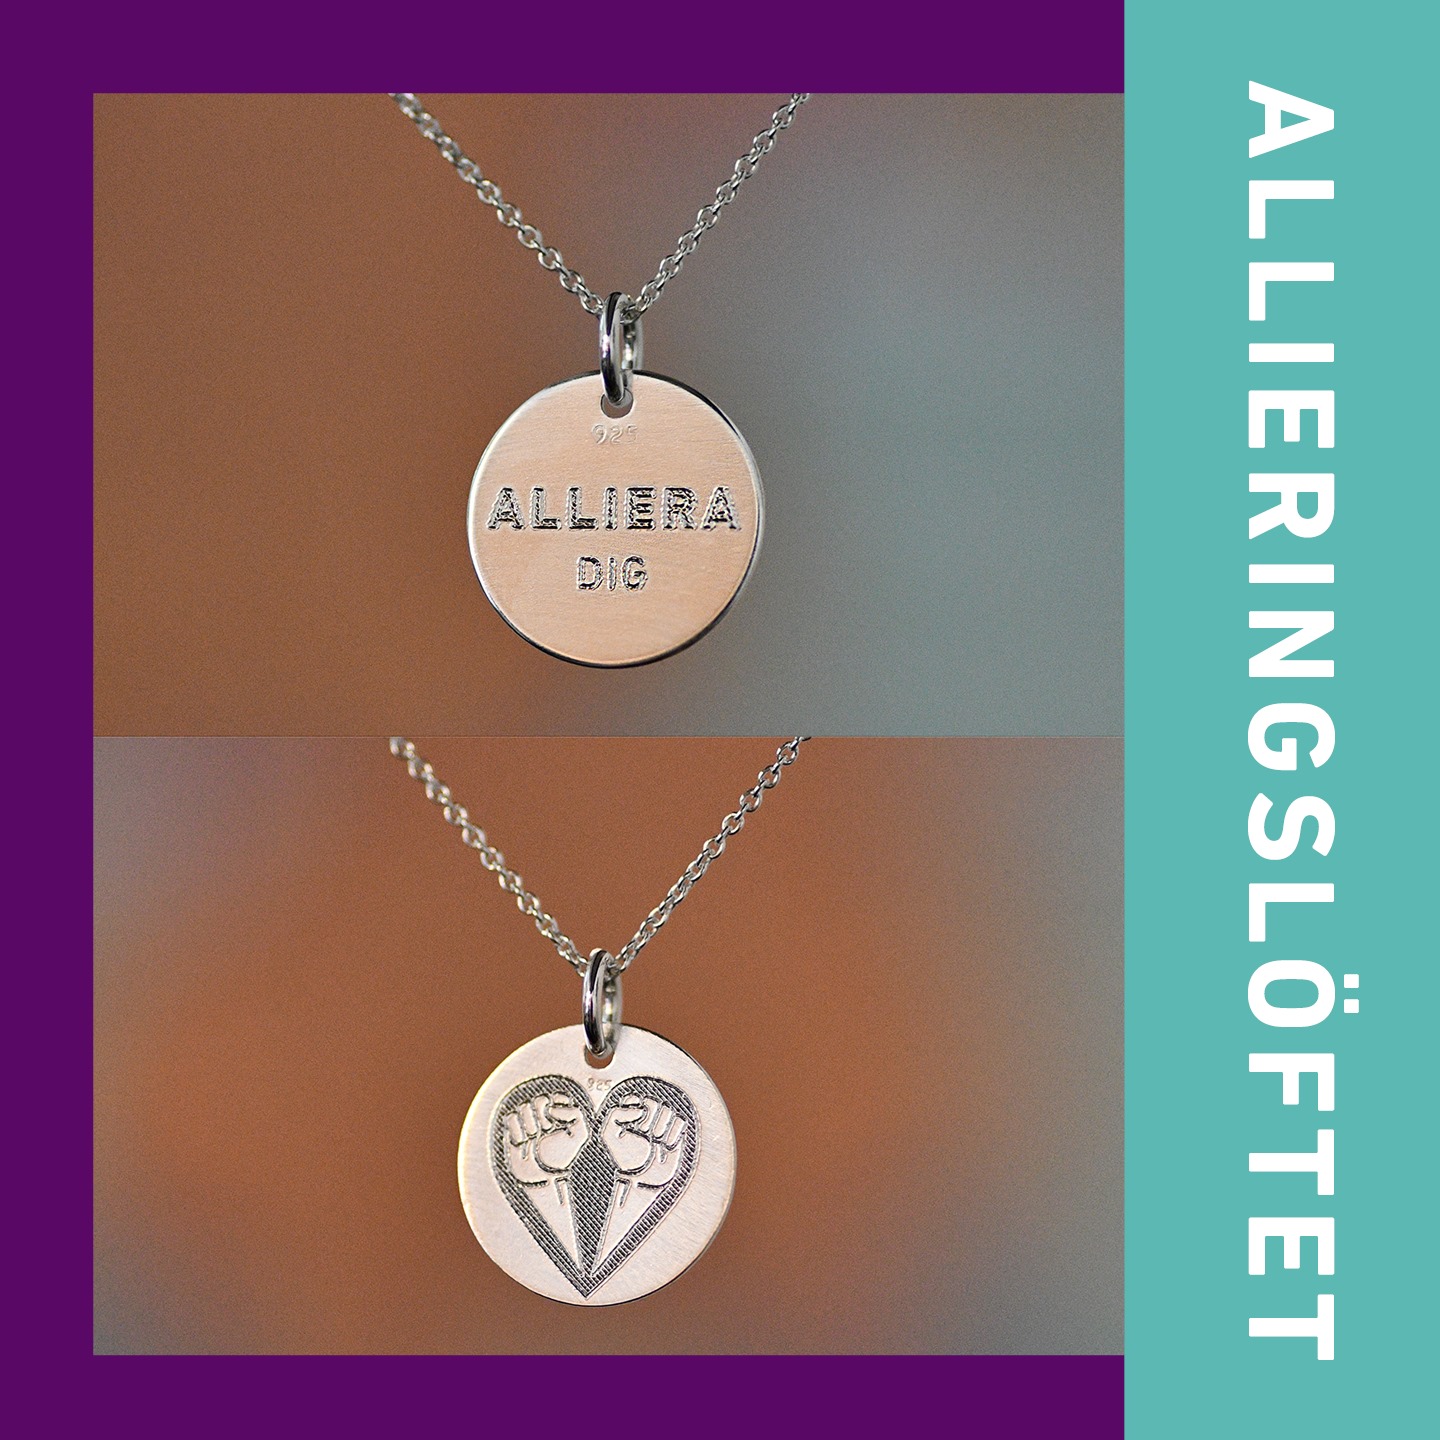 Två foton av silverberlock med texten "Alliera dig!" respektive Allierads symbol på – två knutna nävar formade till ett hjärta samt bård med texten “Allieringslöftet”.